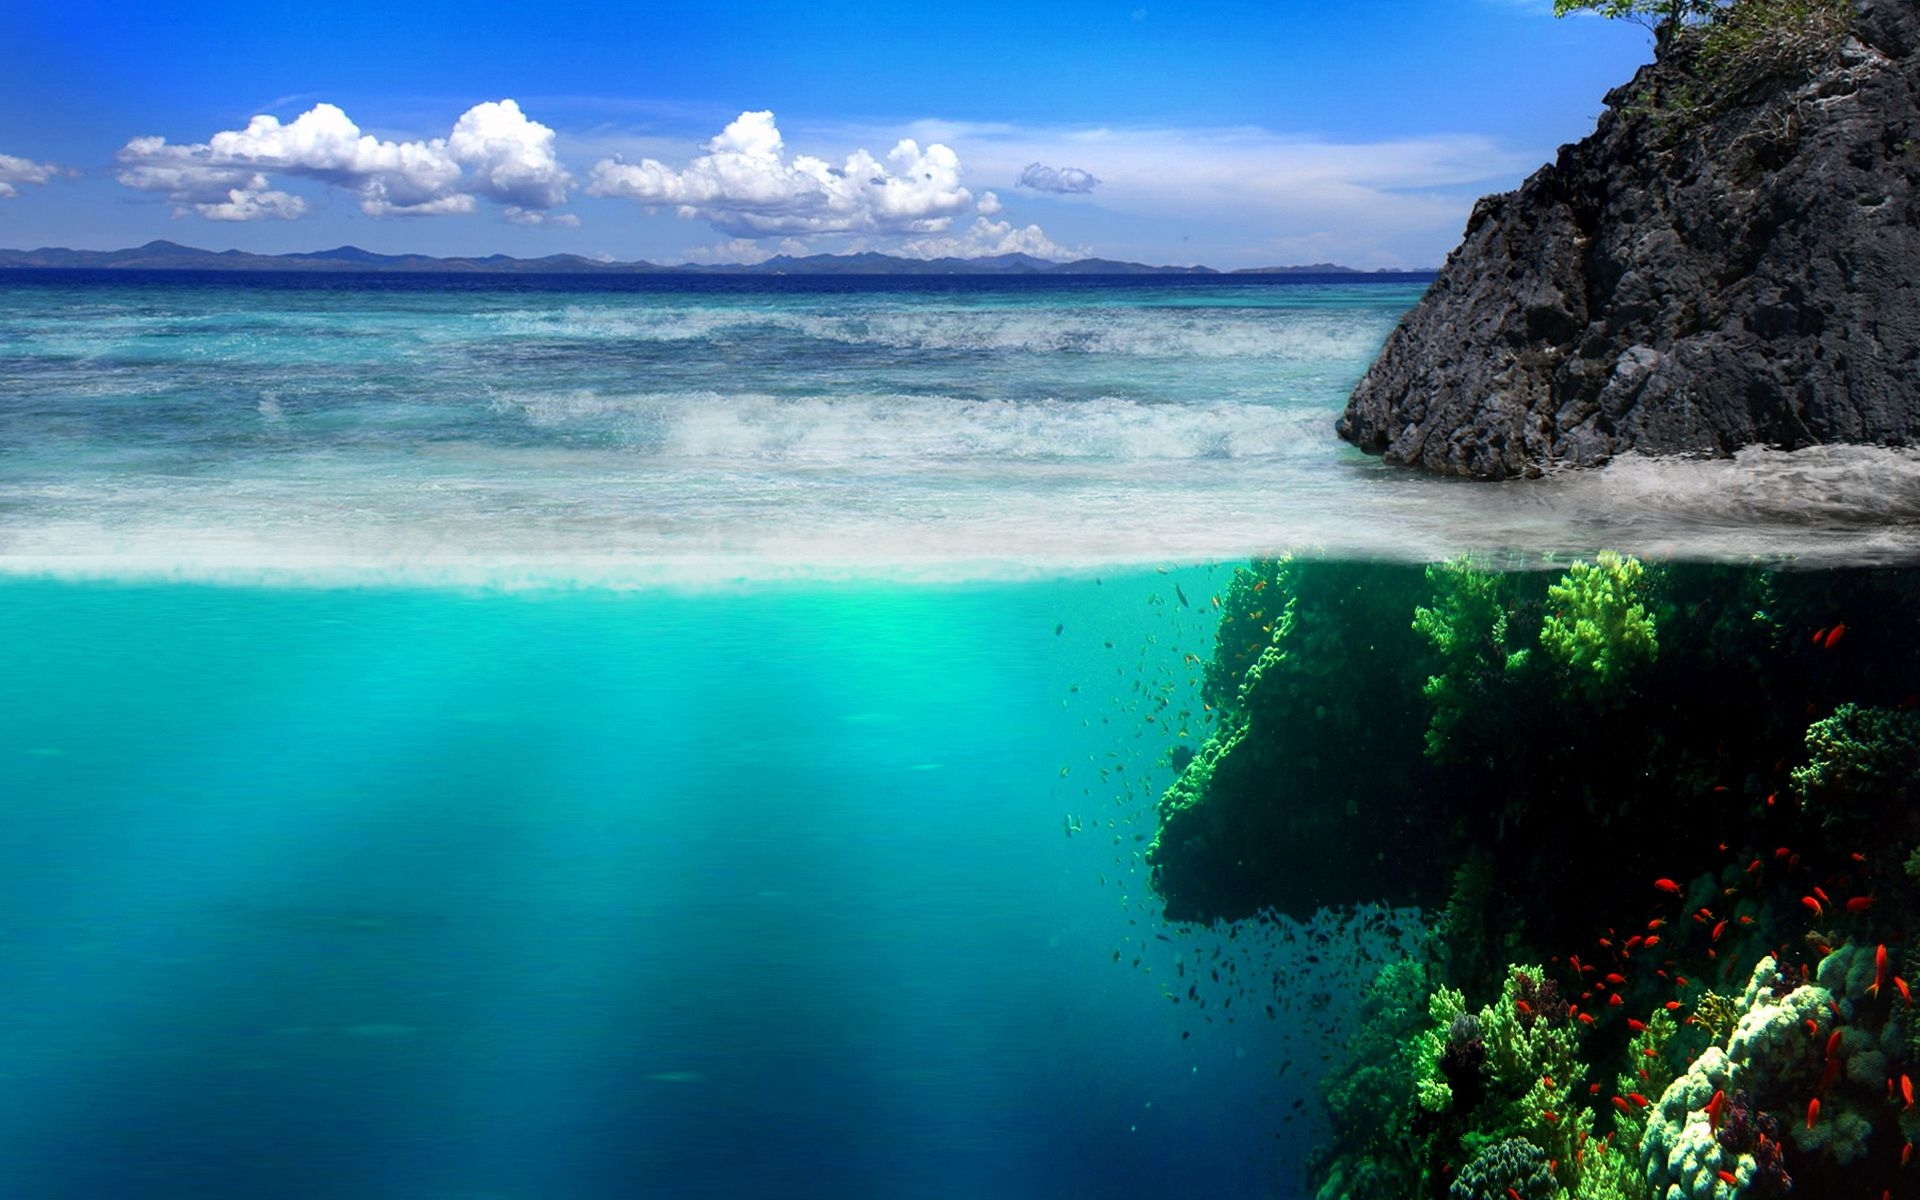 Ocean Backgrounds free download | PixelsTalk.Net